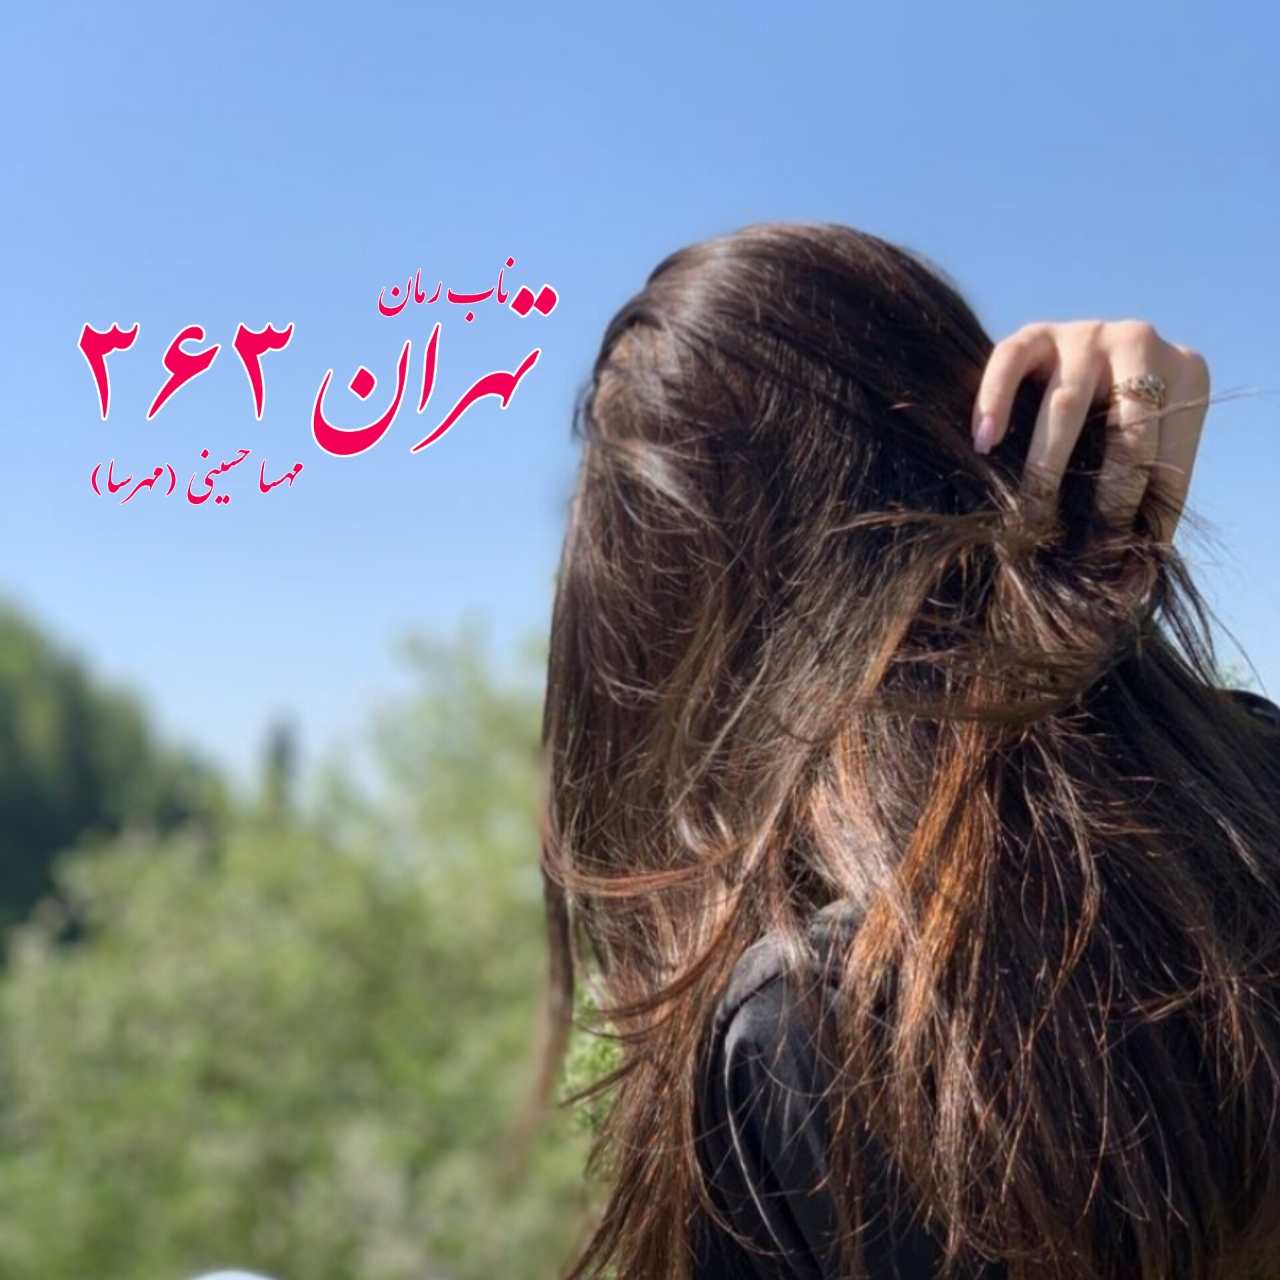 دانلود رمان تهران 363 (گان اول) pdf از مهسا حسینی (مهرسا)